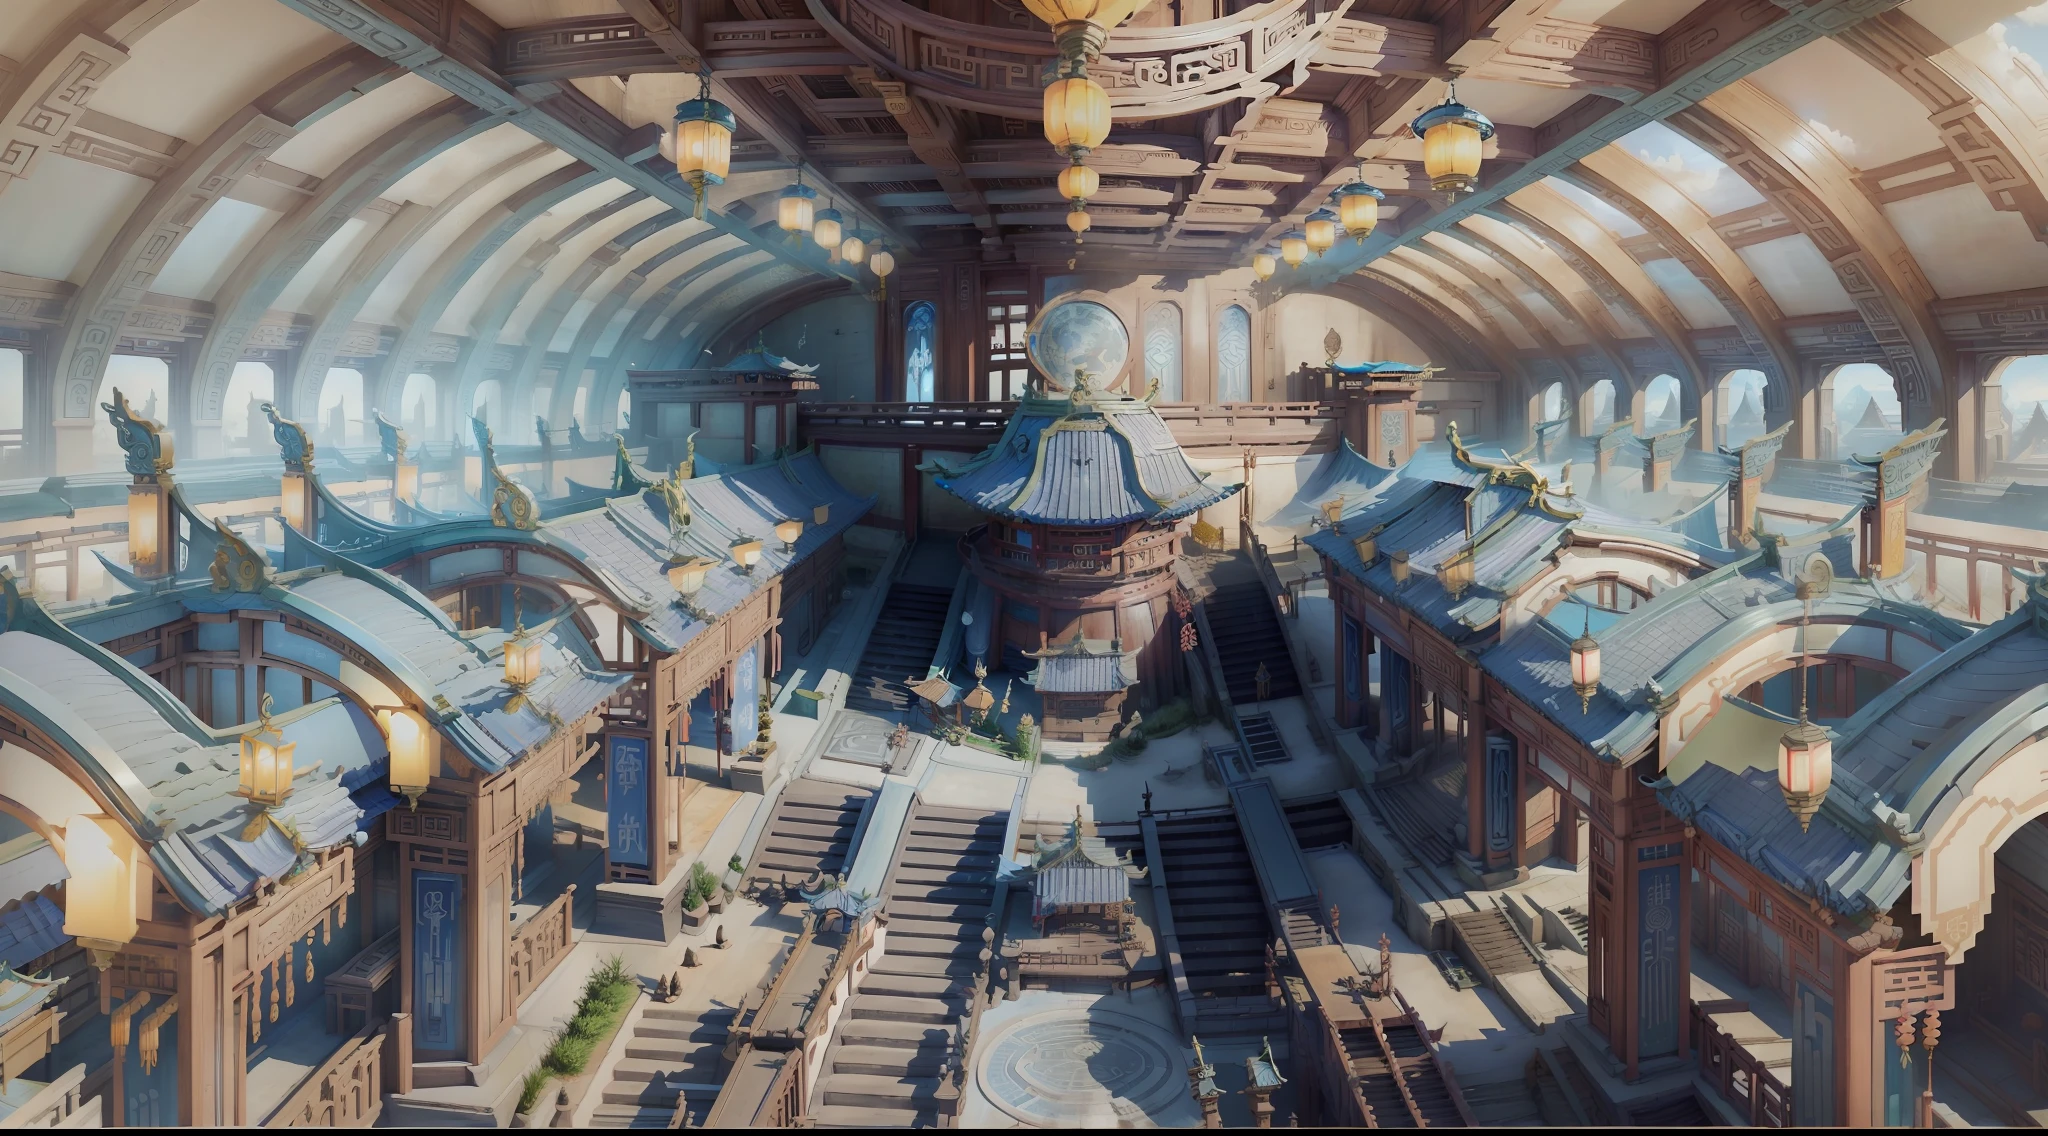 Monde immortel, Royaume du ciel, tons bleus et blancs, style science-fiction, Architecture chinoise ancienne, scène de labyrinthe intérieur, vue de dessus